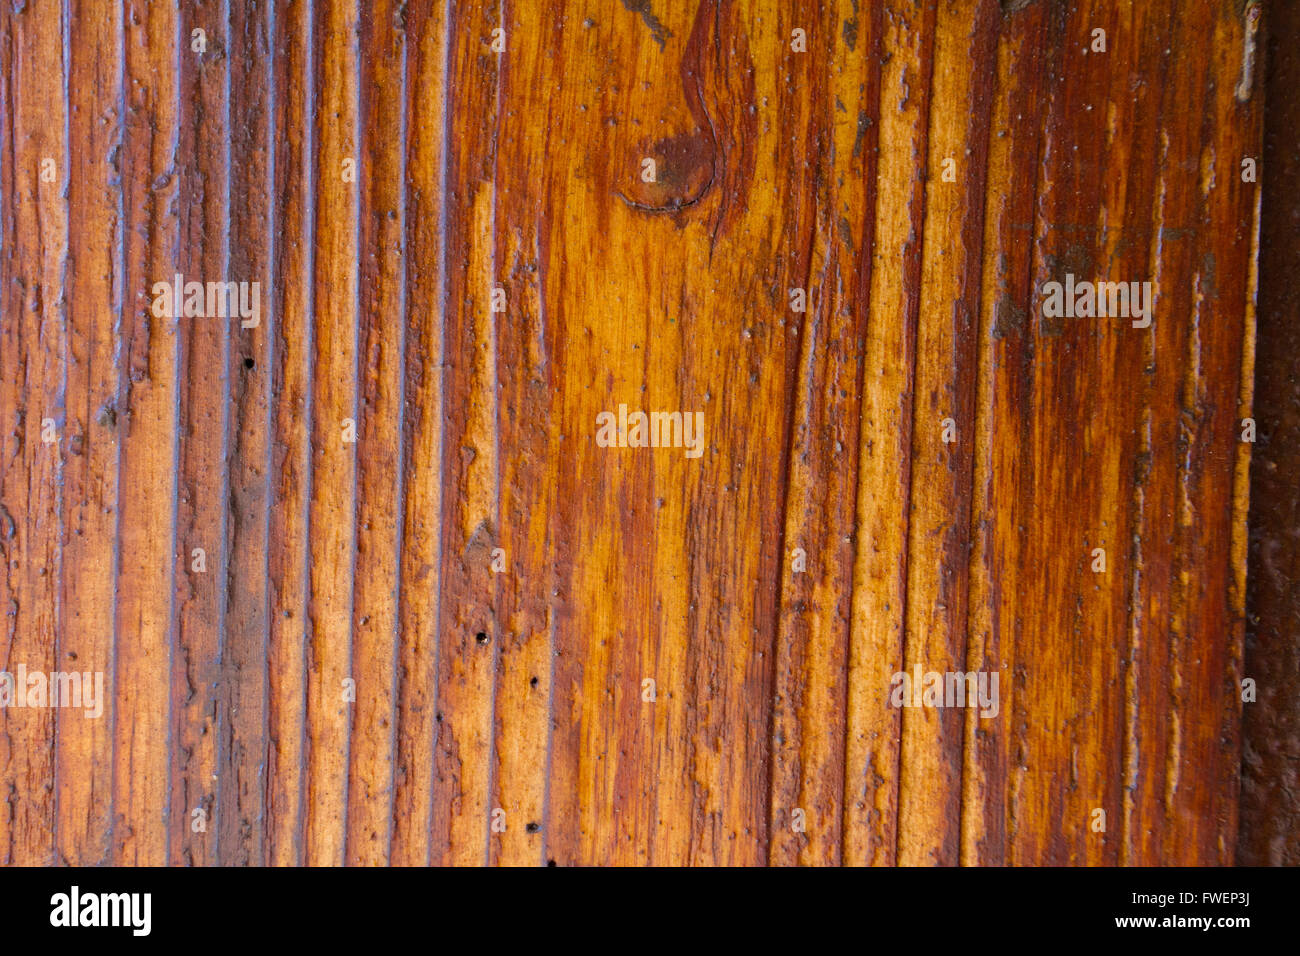 Queste strisce verticali sono tipiche di questo tipo di legno tropicale sull'isola di Hawaii. Questa immagine è un dettaglio di natura backgrou Foto Stock